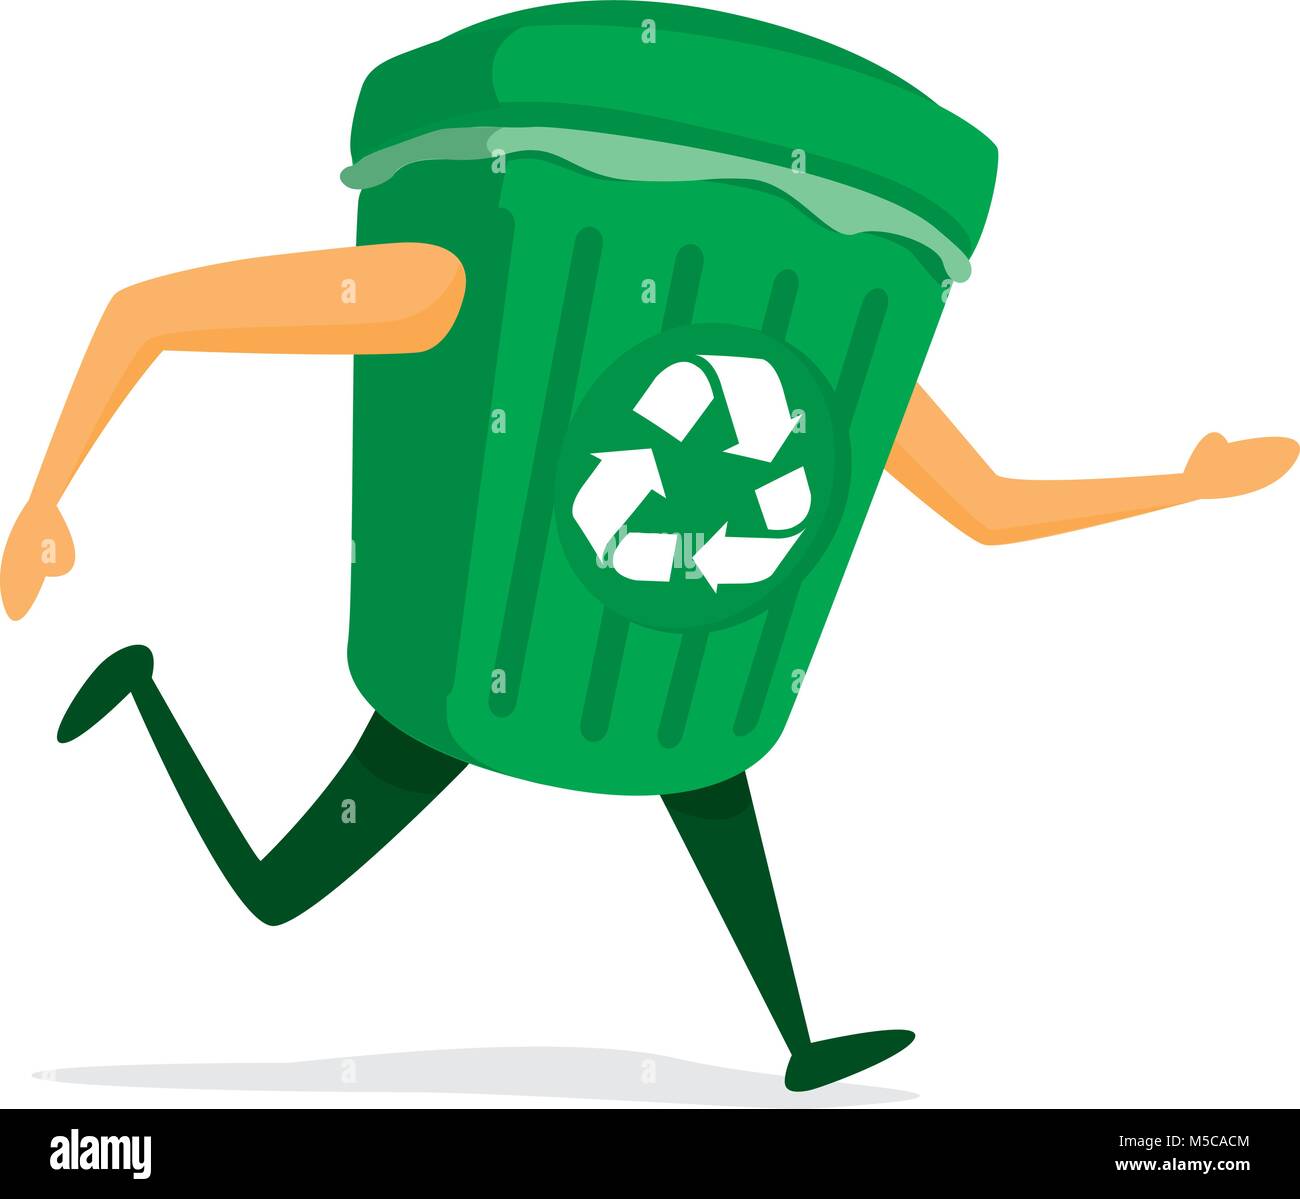 Ilustración de dibujos animados de la papelera de reciclaje en el run Ilustración del Vector